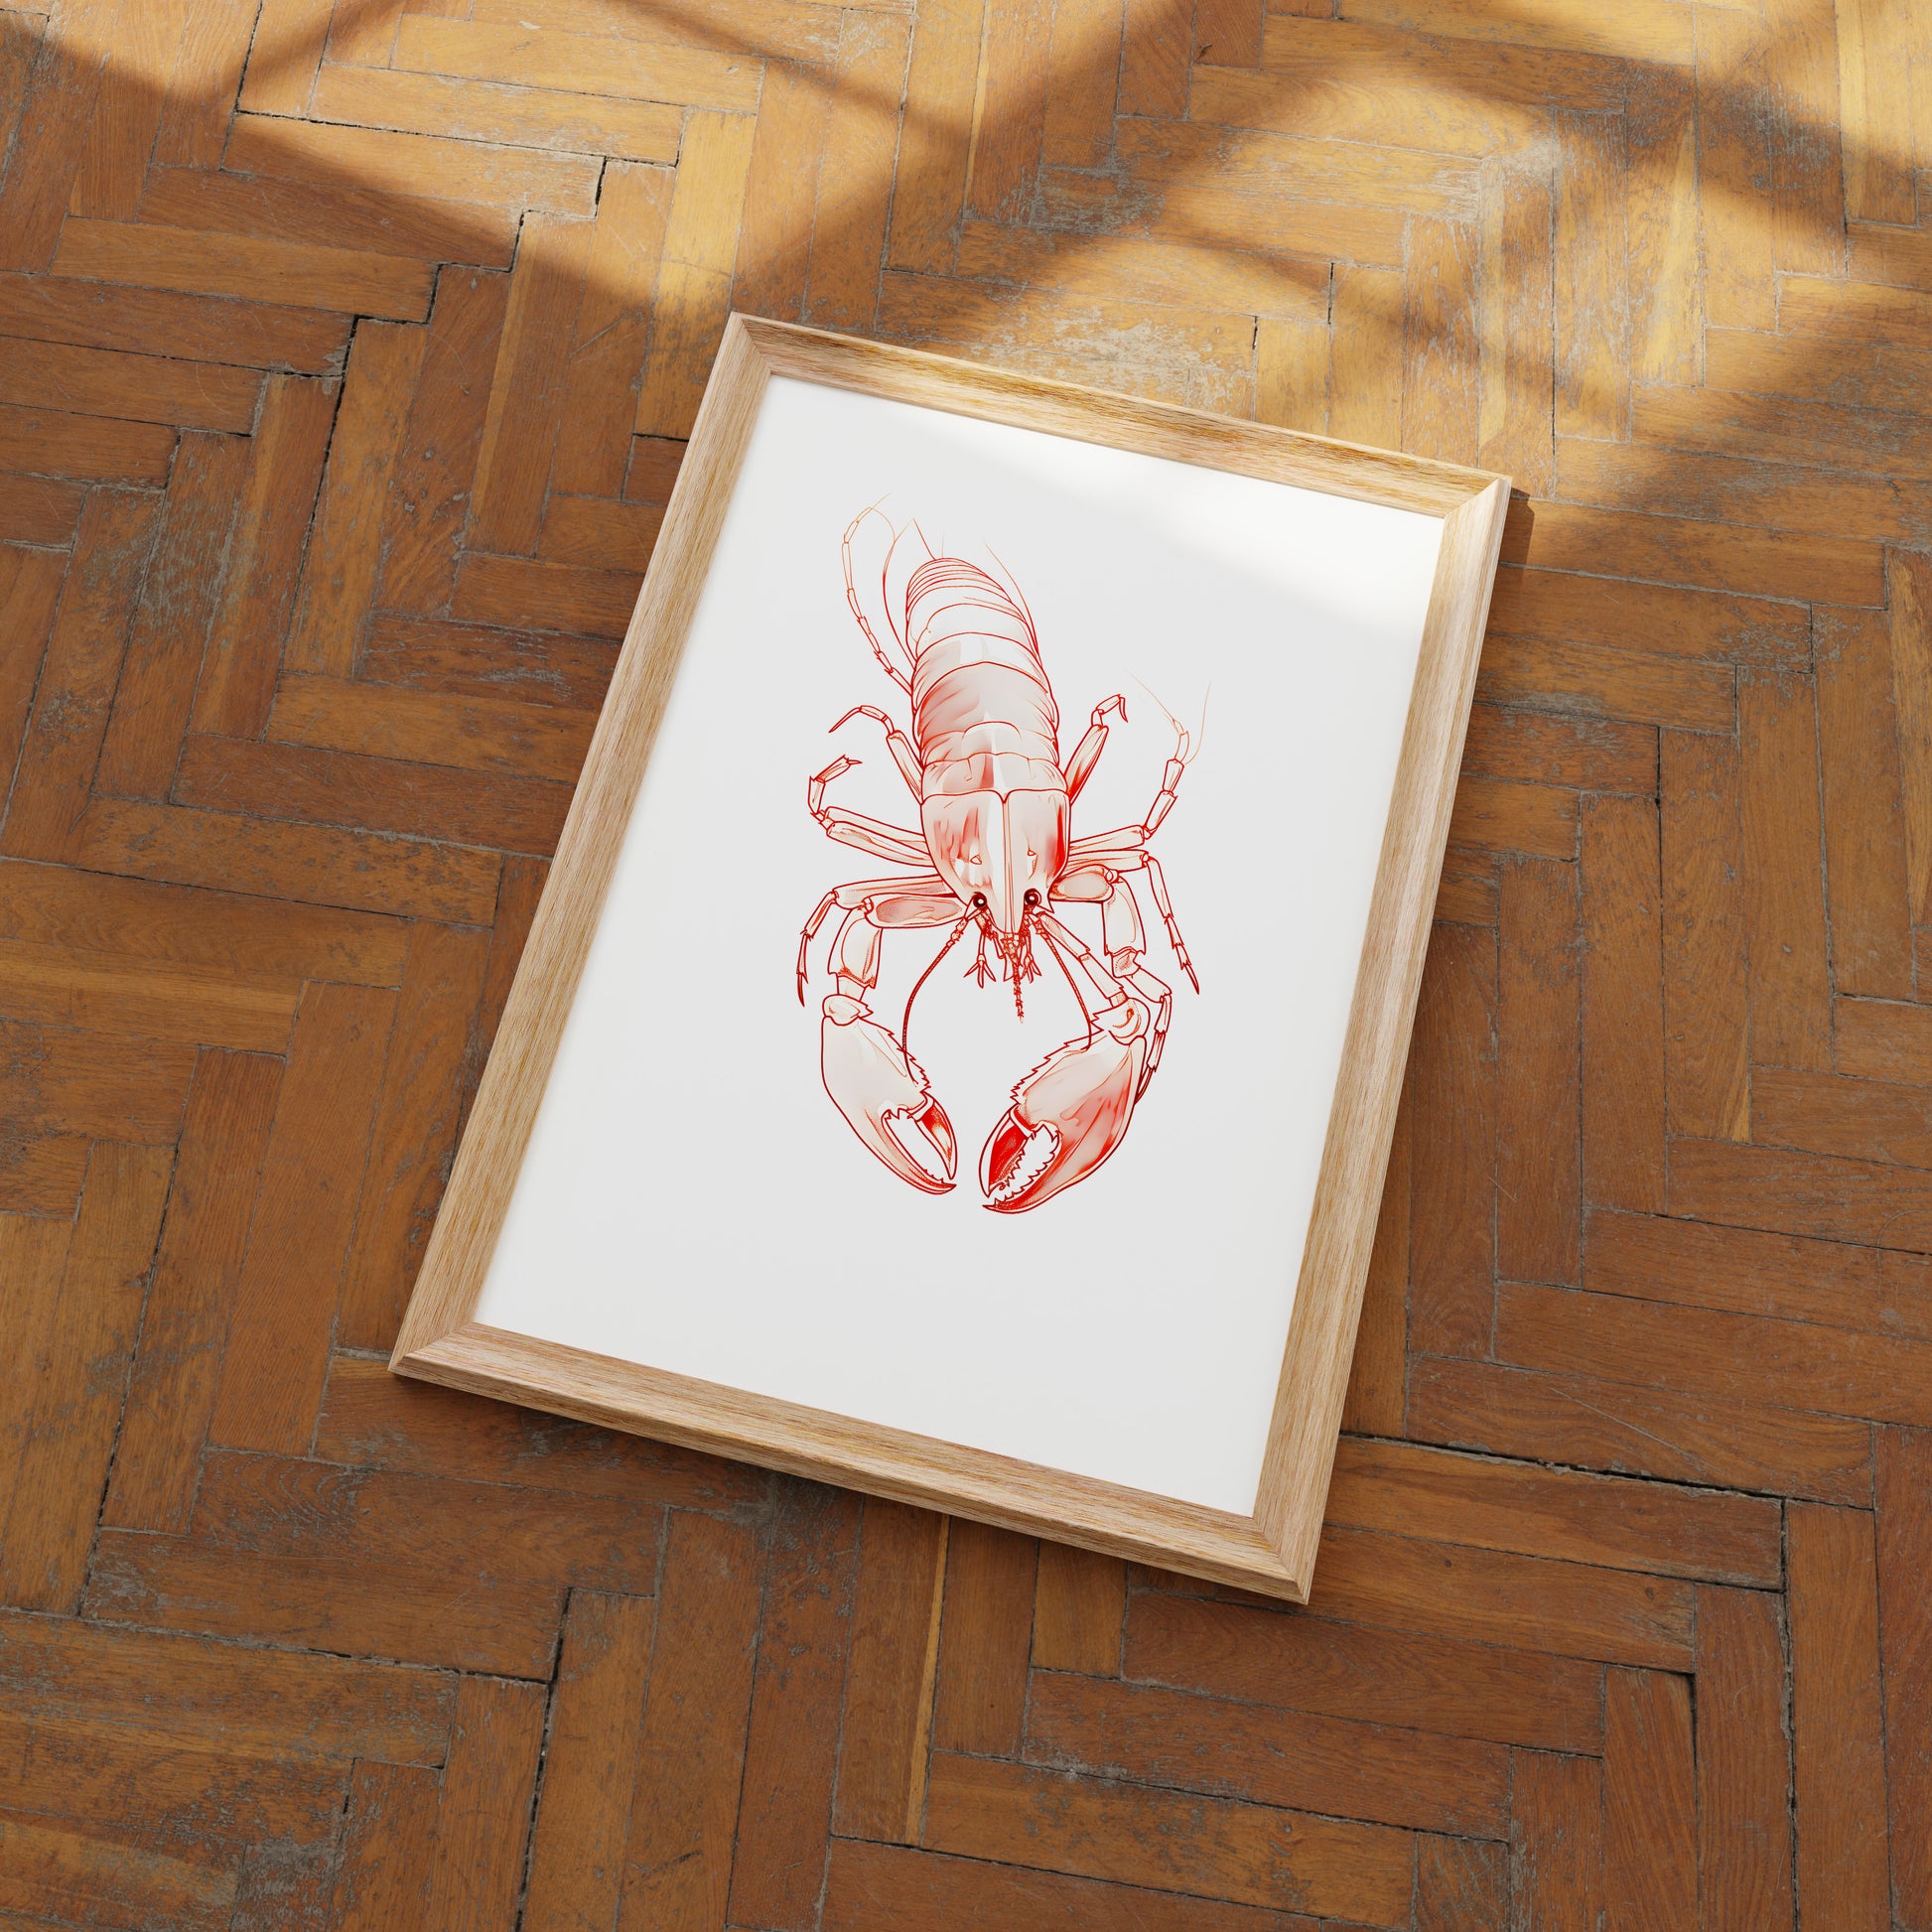 Framed illustration of a lobster on a wooden floor.